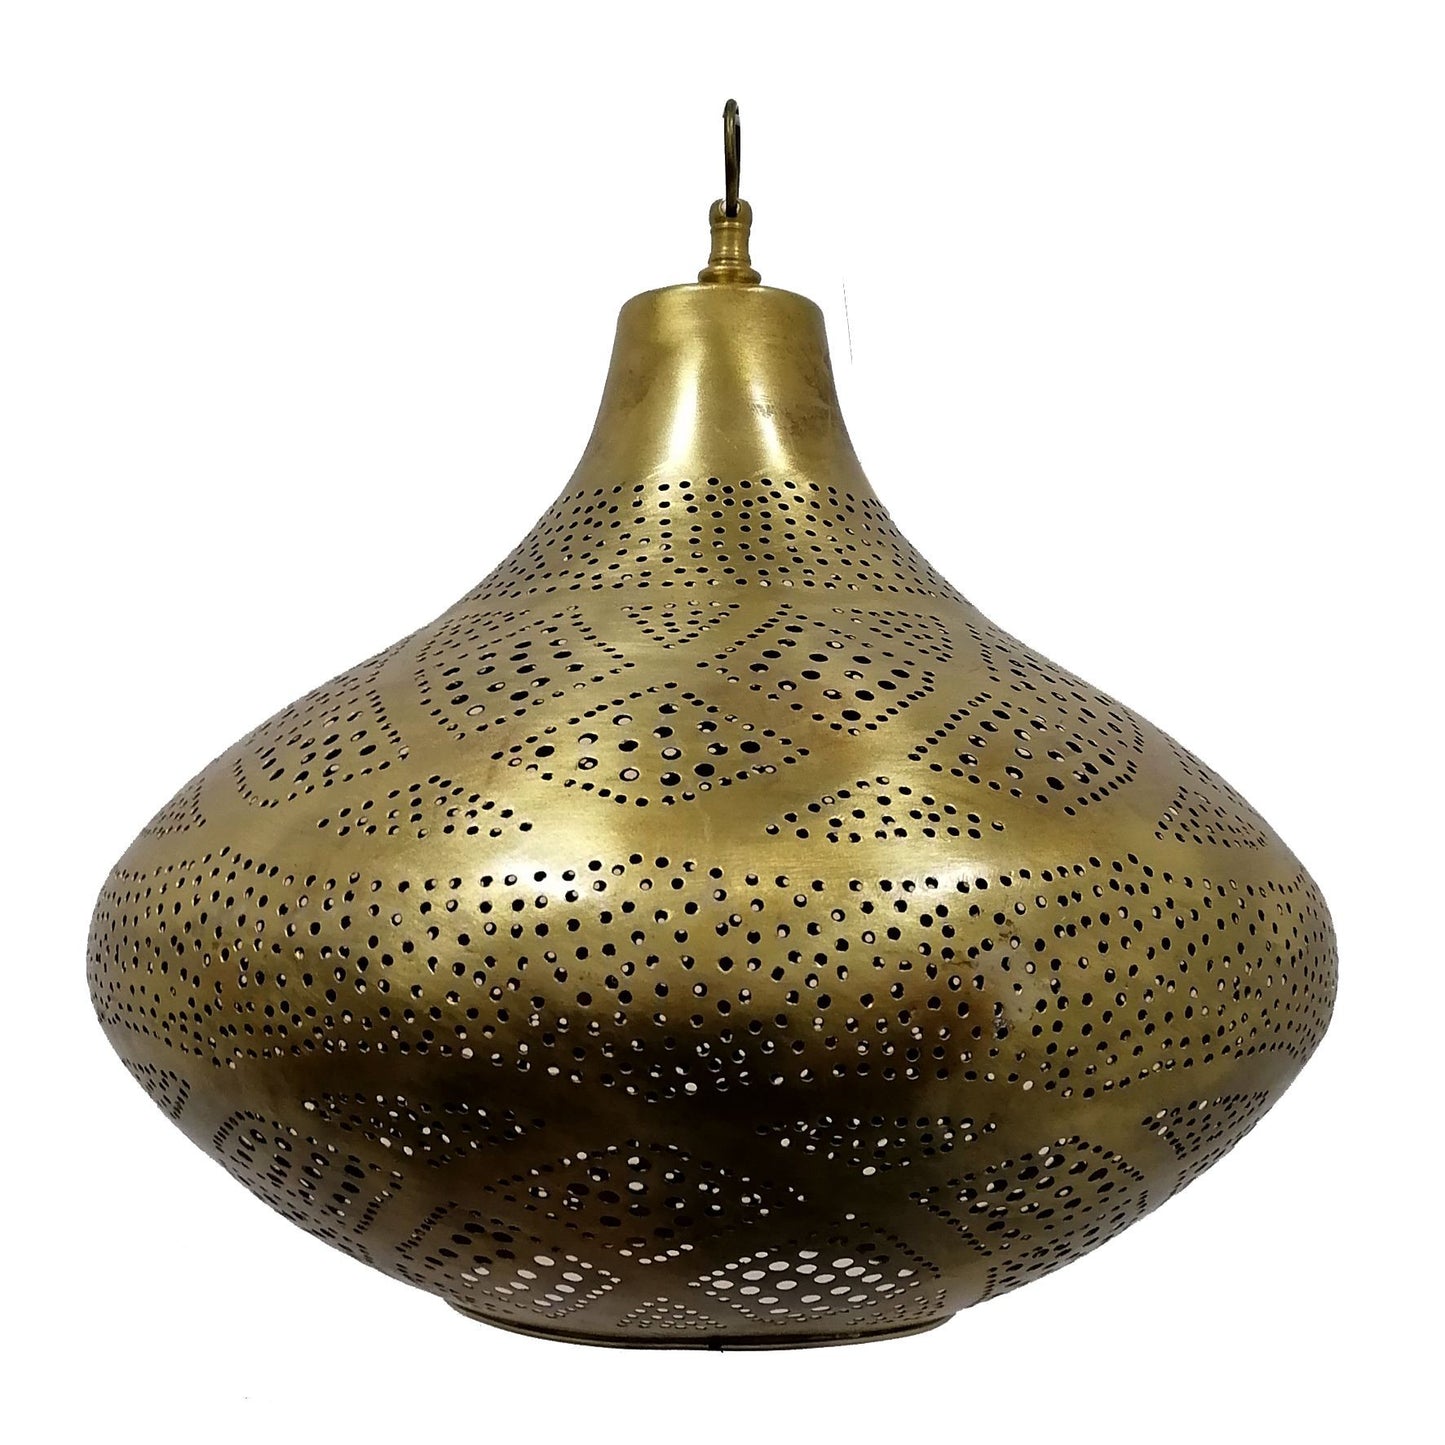 Etnisch meubilair Marokkaanse bronzen kroonluchter Oosterse lantaarnlamp 0203210807